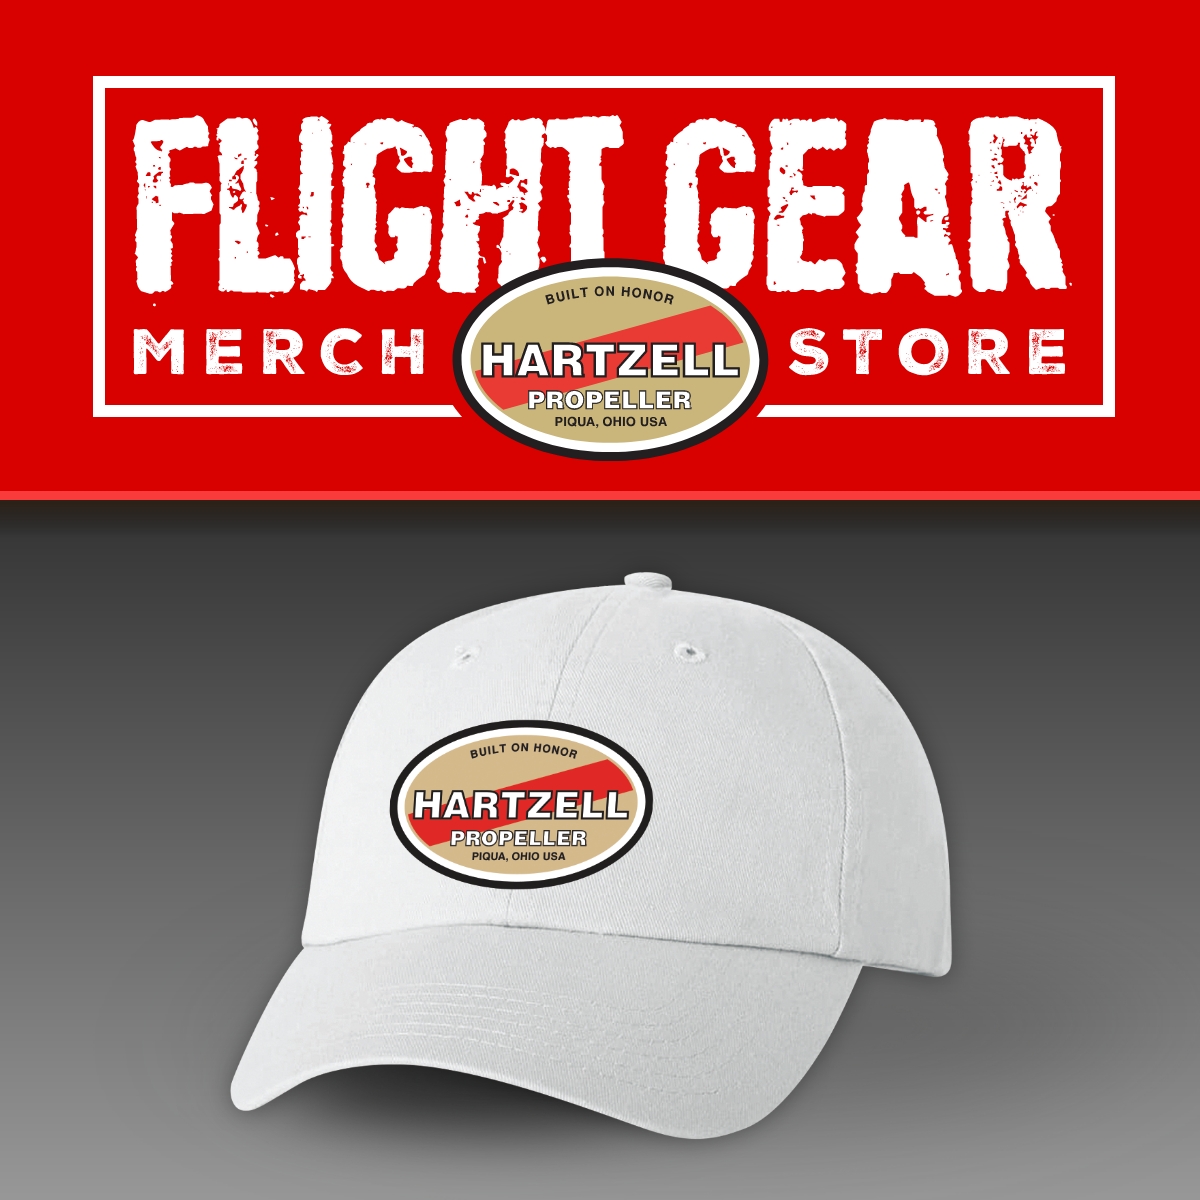 Flight Gear Merch Store Hartzell Propeller Hat